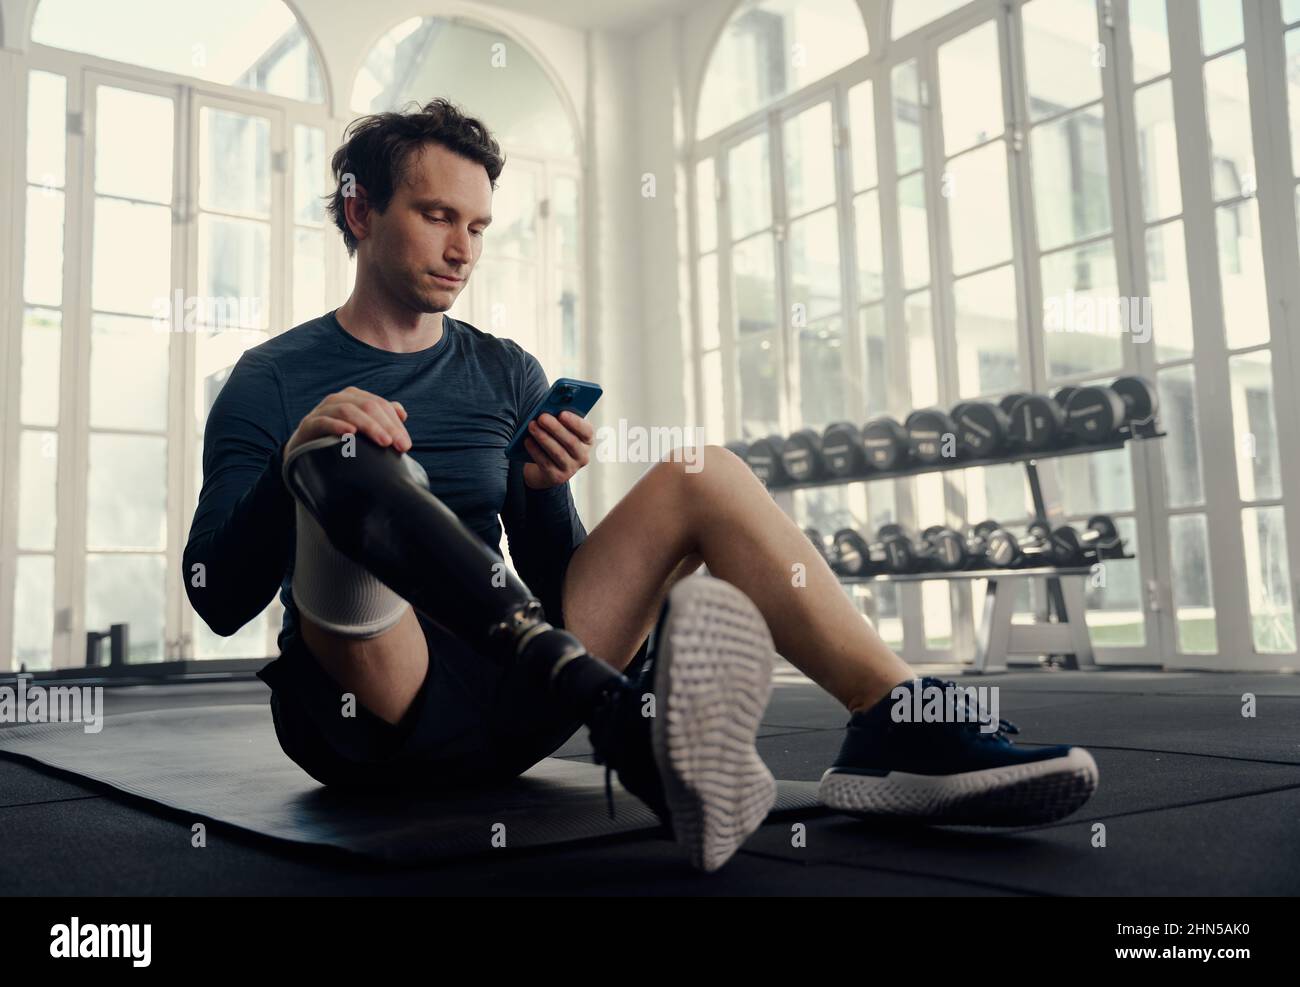 Athlète paralympique sur son mobile dans l'entraînement de gym. Homme avec une jambe prothétique sur son téléphone cellulaire dans une salle de gym moderne Banque D'Images